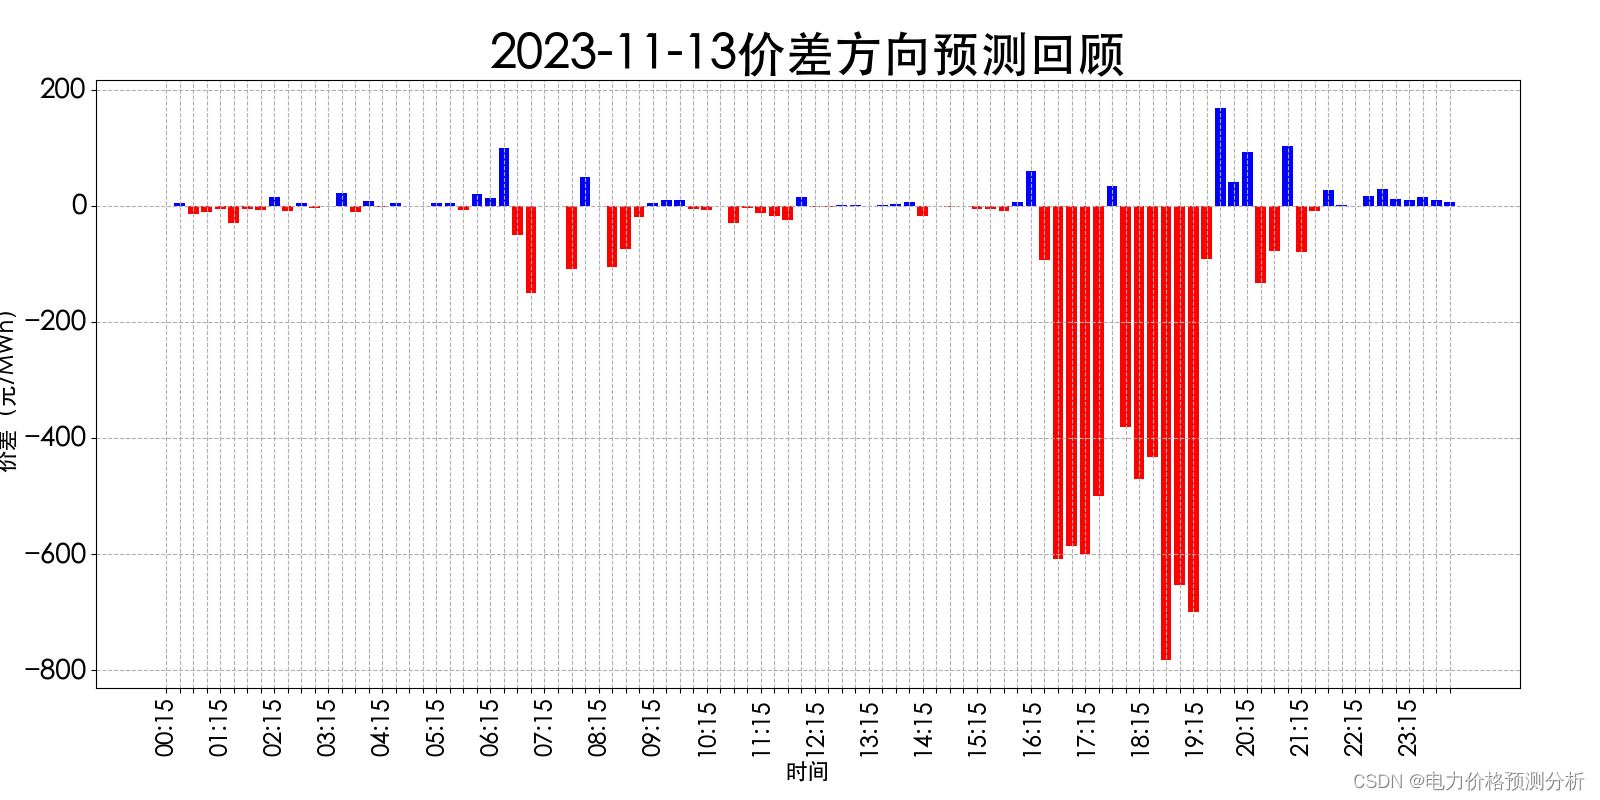 山西电力市场日前价格预测【2023-11-15】